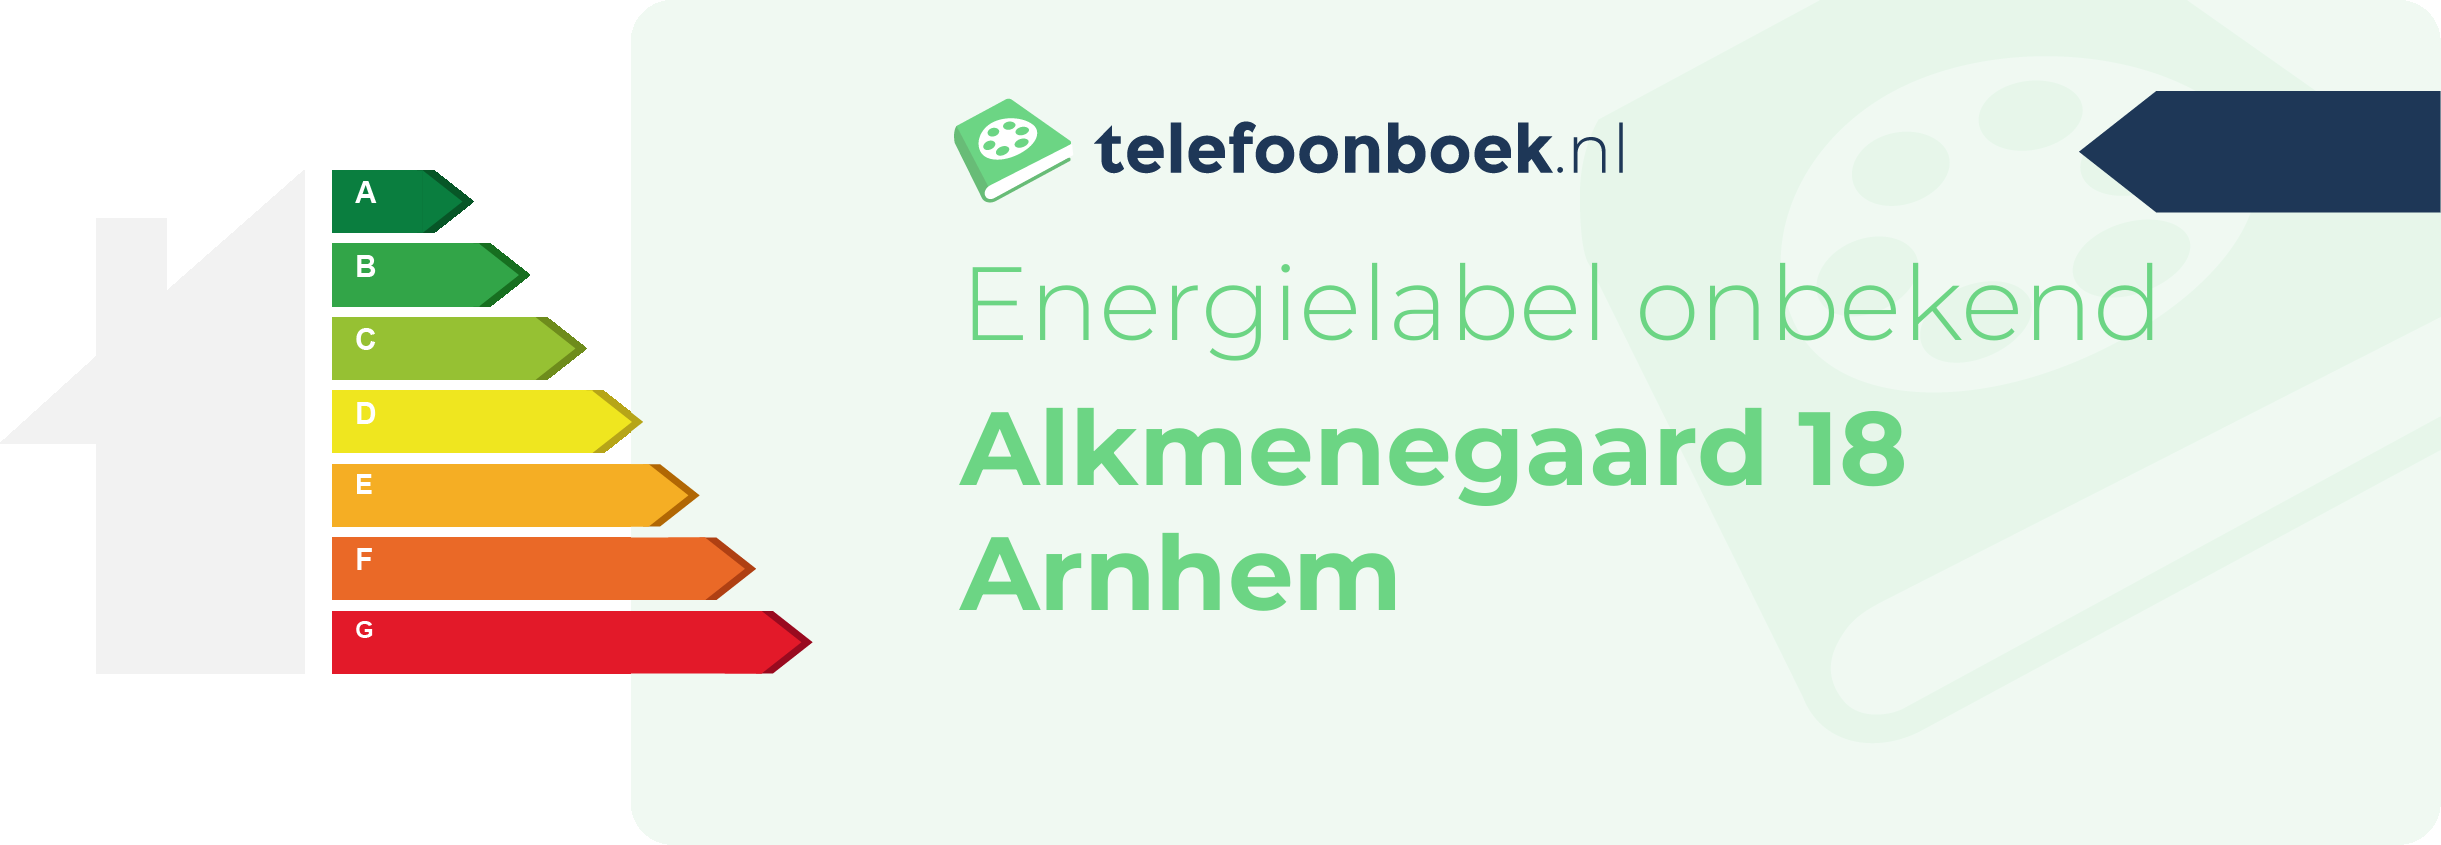 Energielabel Alkmenegaard 18 Arnhem